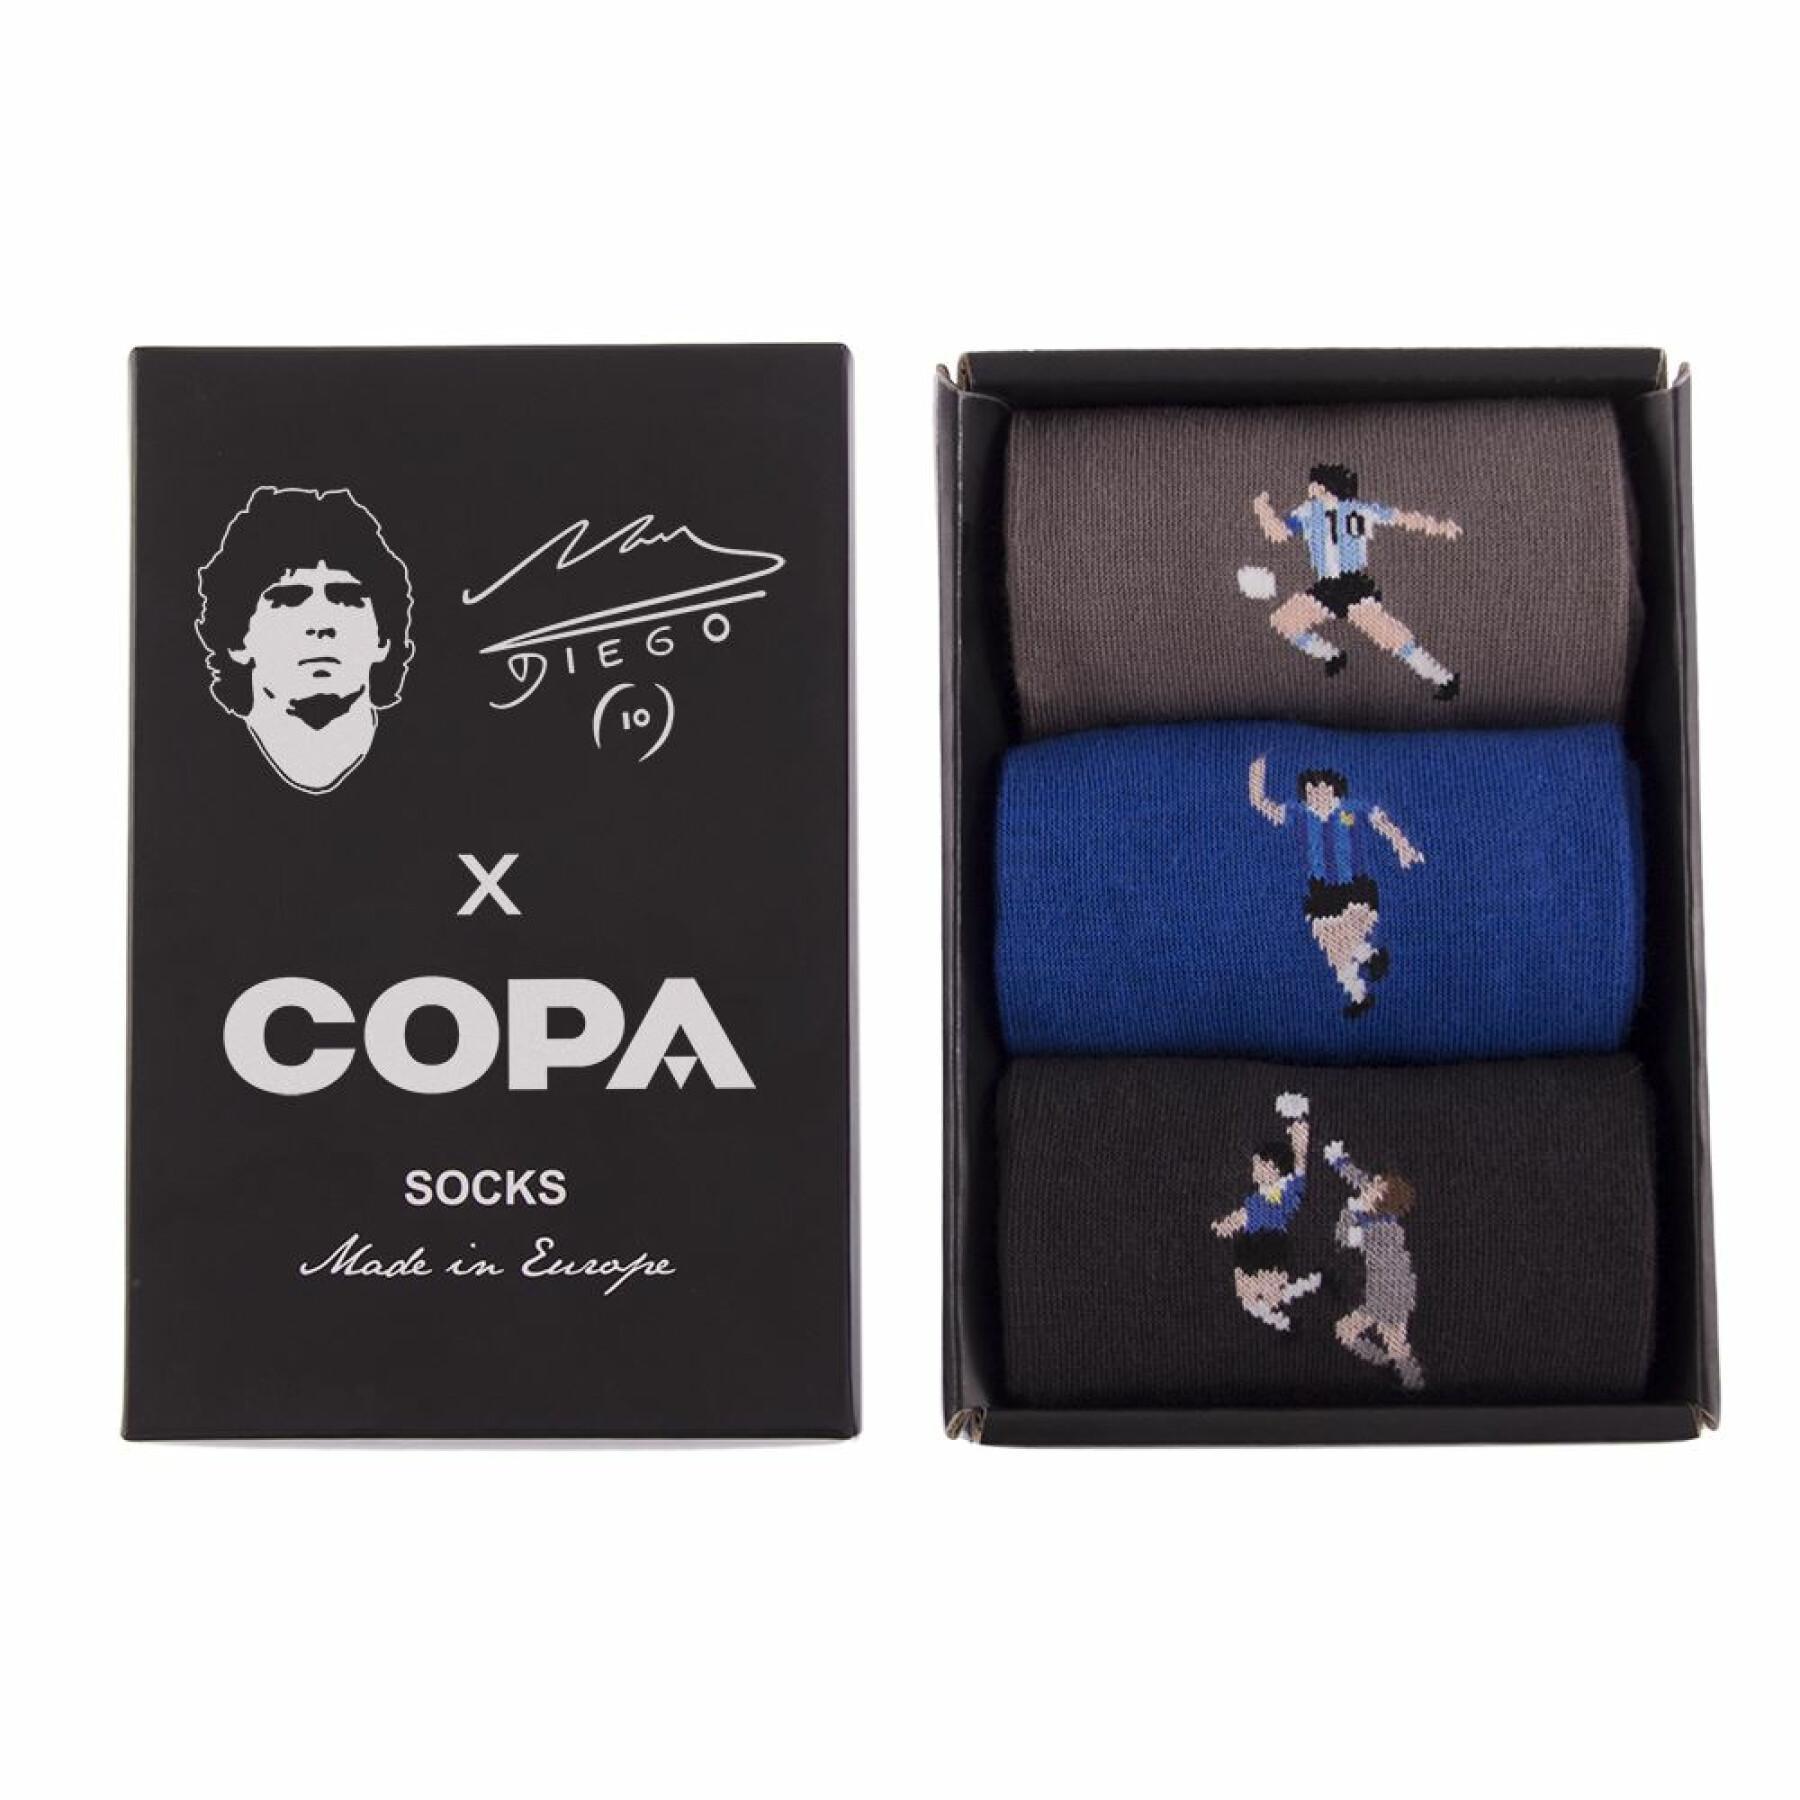 Coffret de chaussettes Copa Argentine Maradona (3P)